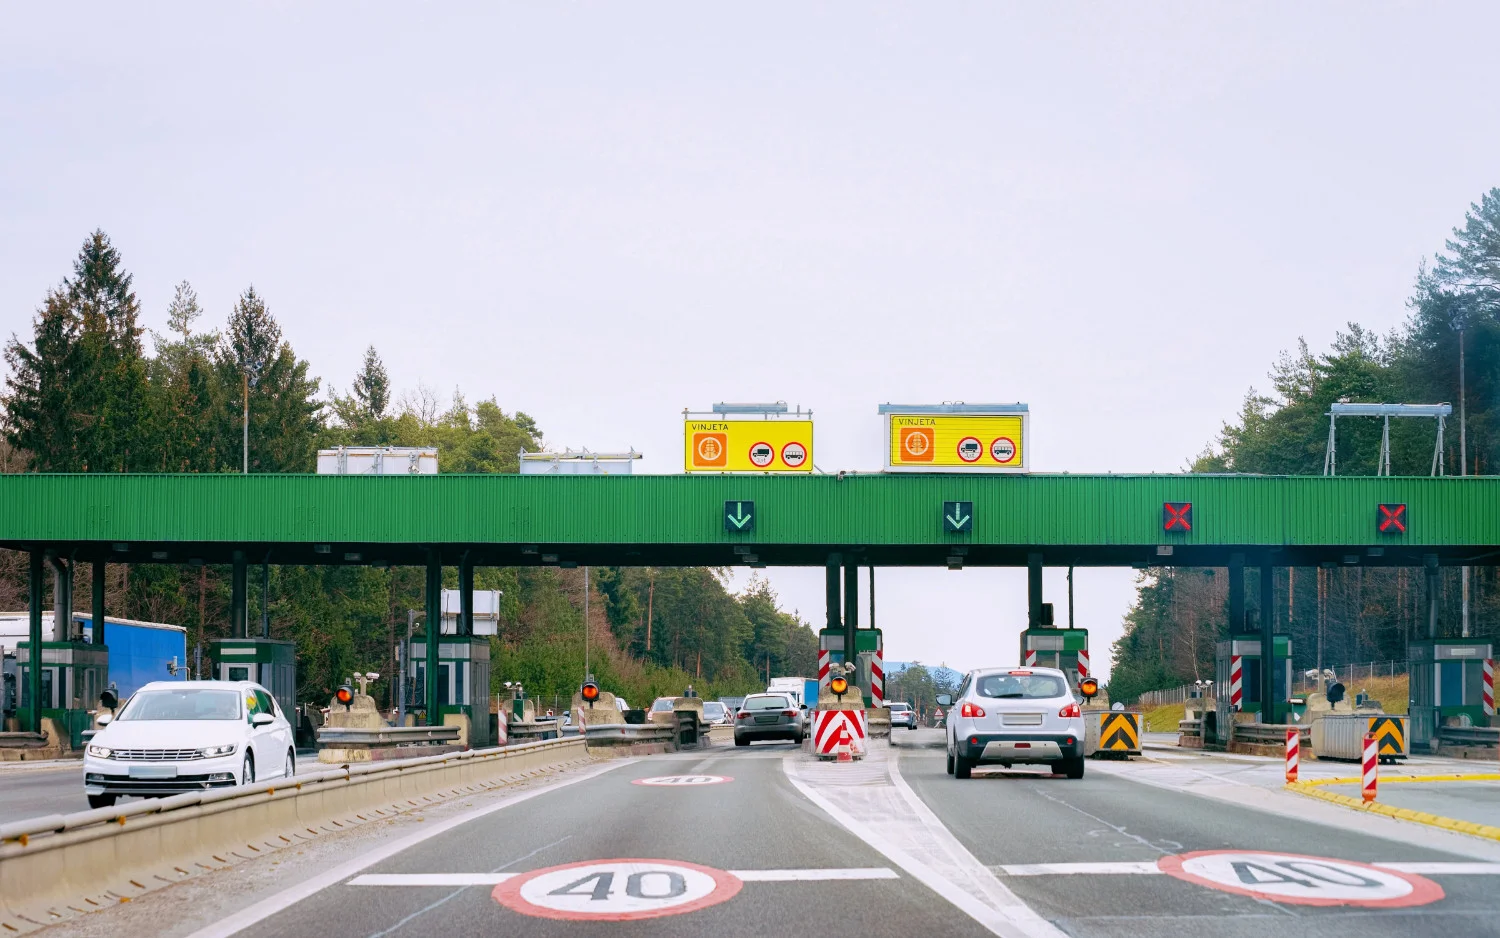 Za uporabo avtocest v Sloveniji je treba plačati cestnino (kjer je to potrebno) z obvezno elektronsko nalepko, imenovano e-vinjeta.